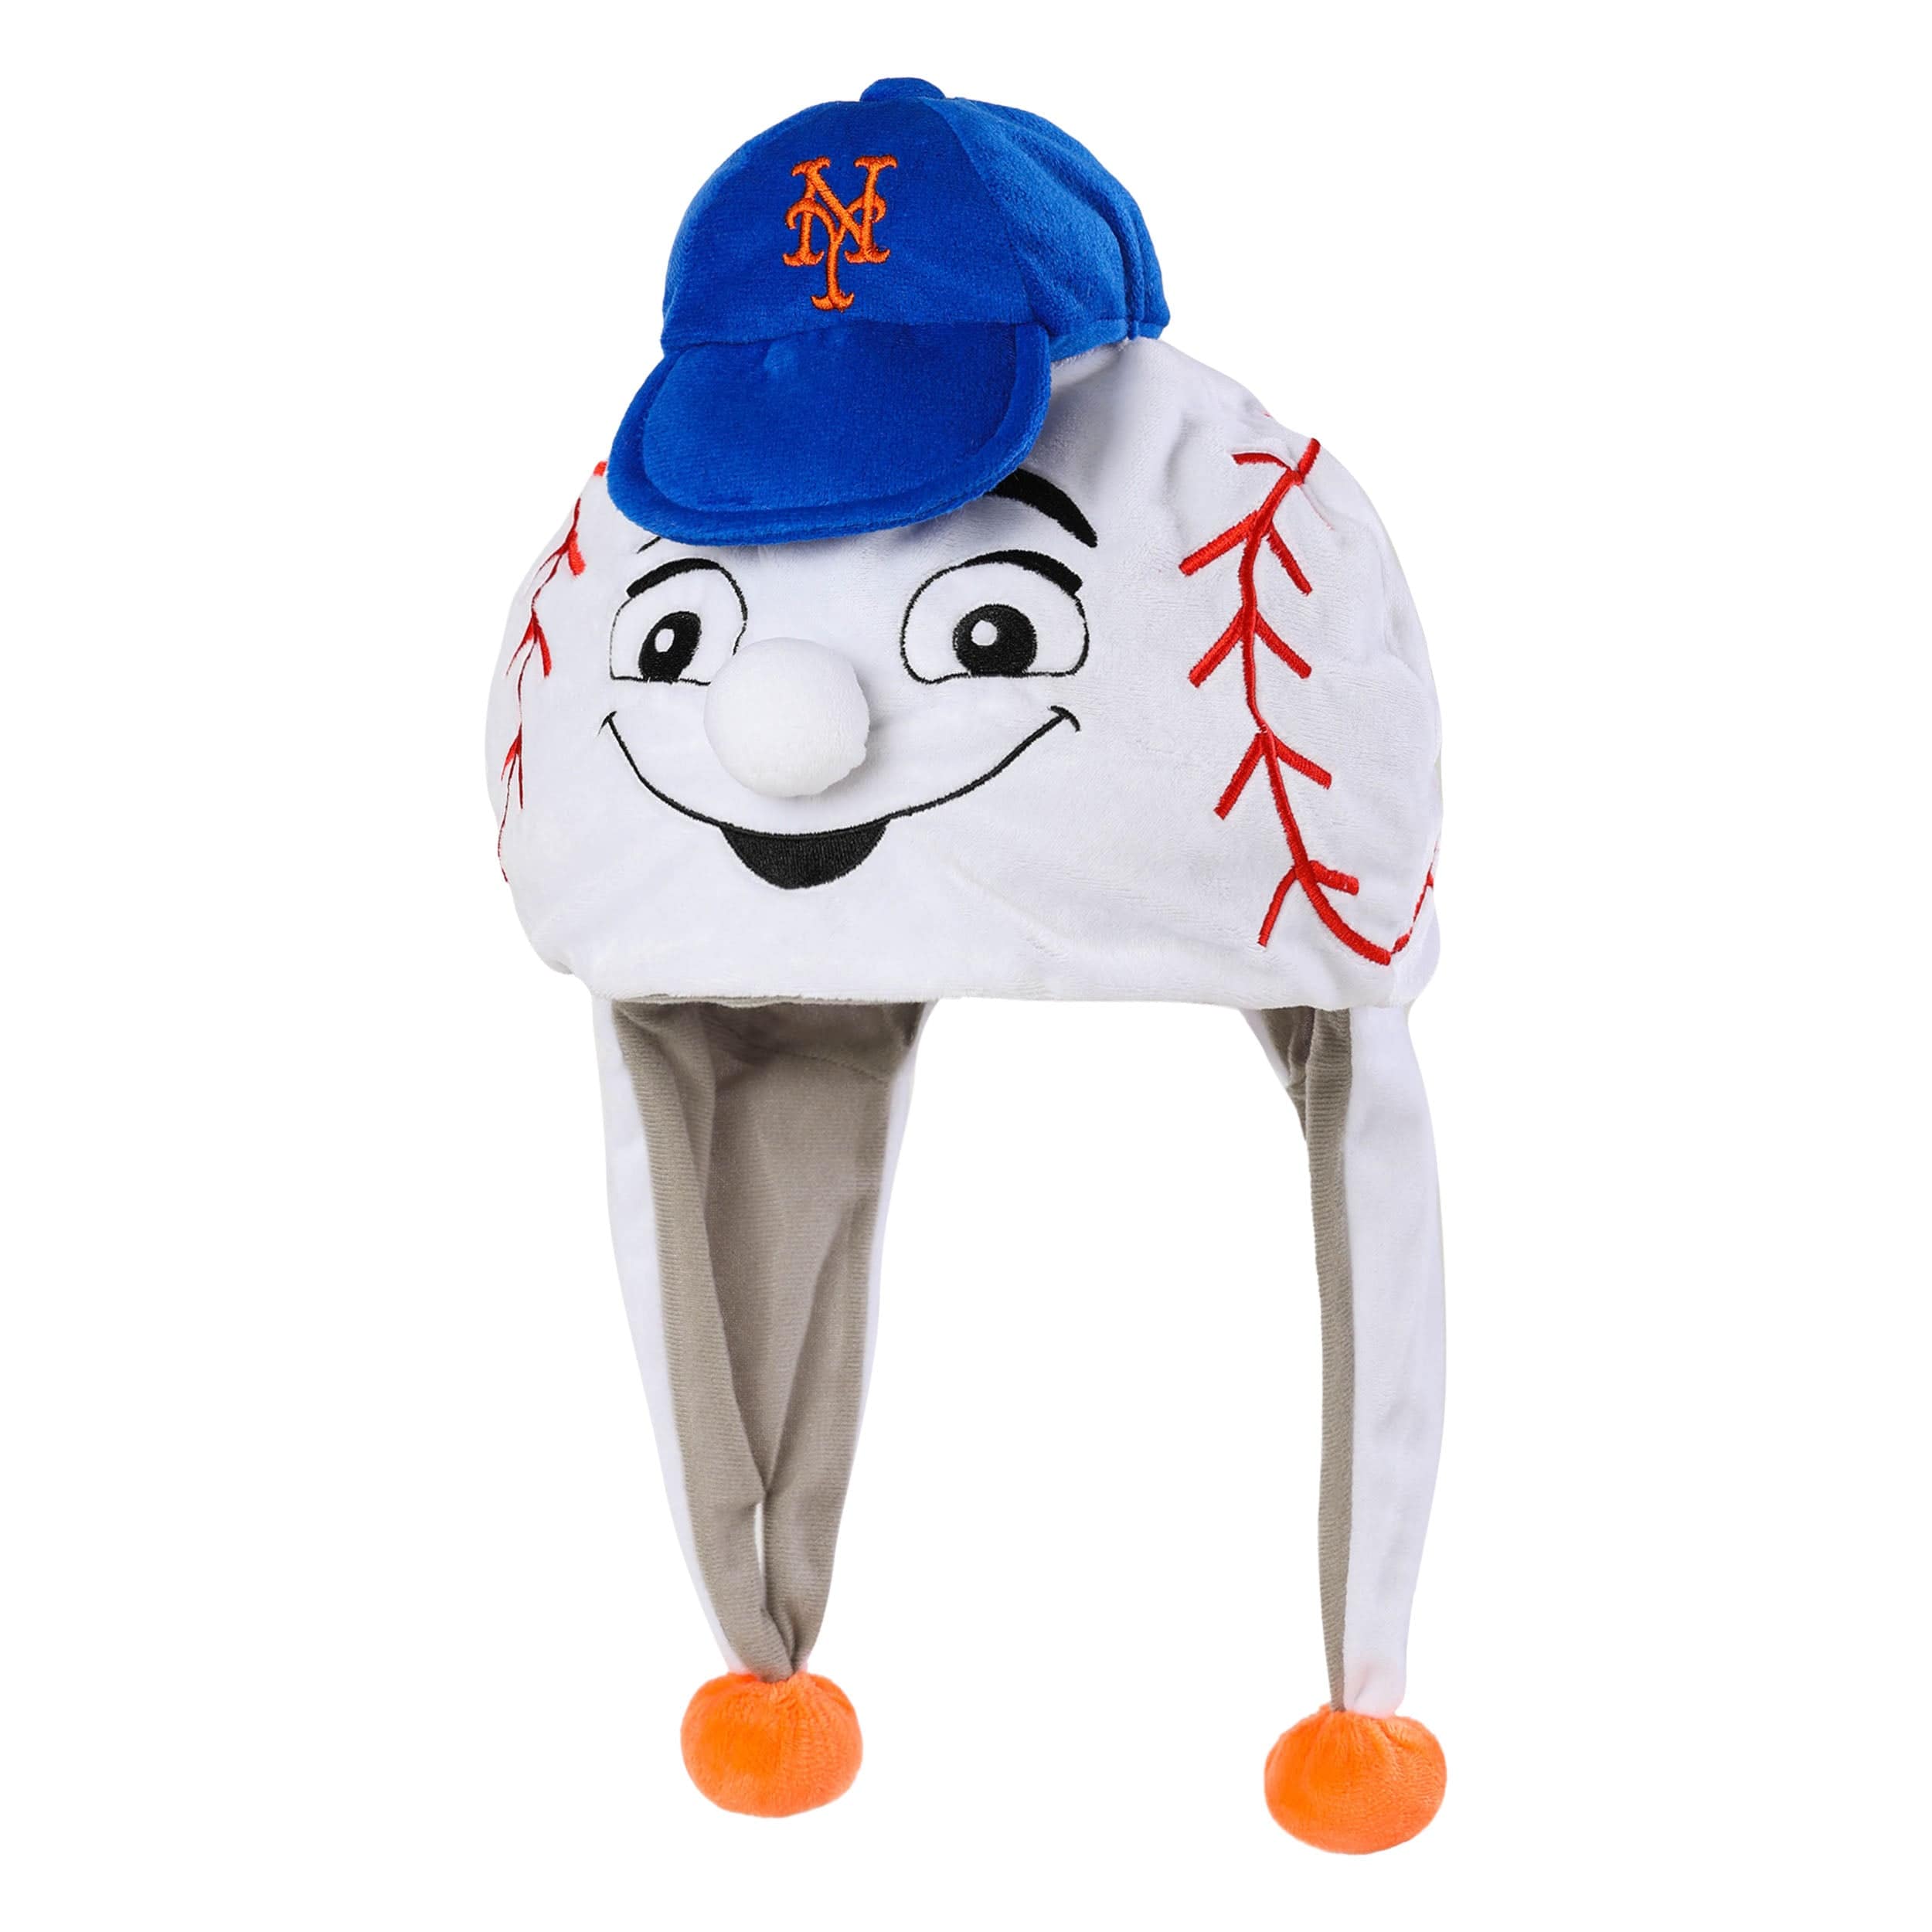 new york mets mascot